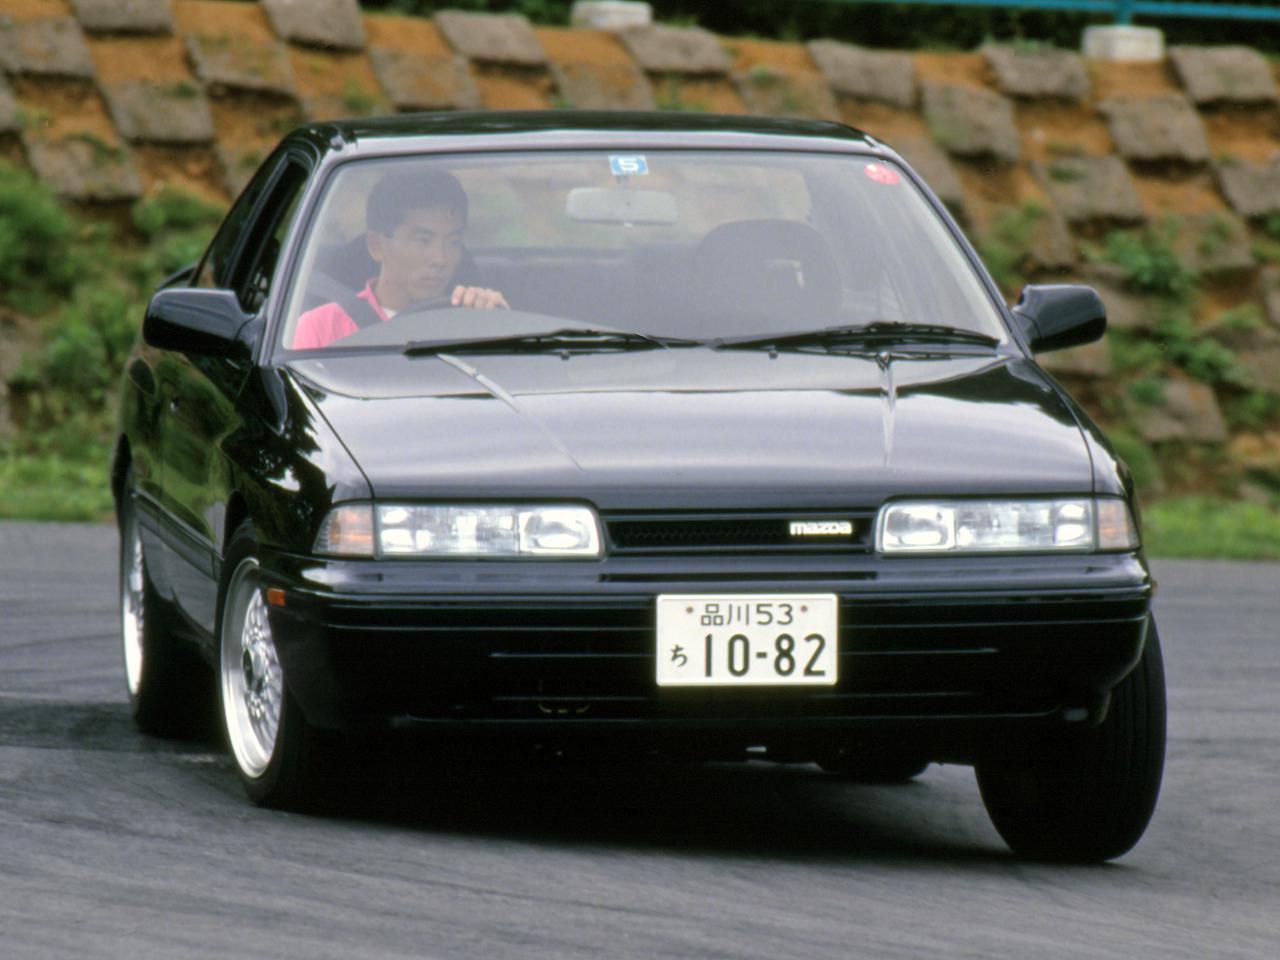 昭和の名車 177 マツダ カペラは C2アンフィニで究極のハンドリングを目指した Webモーターマガジン 自動車情報サイト 新車 中古車 Carview